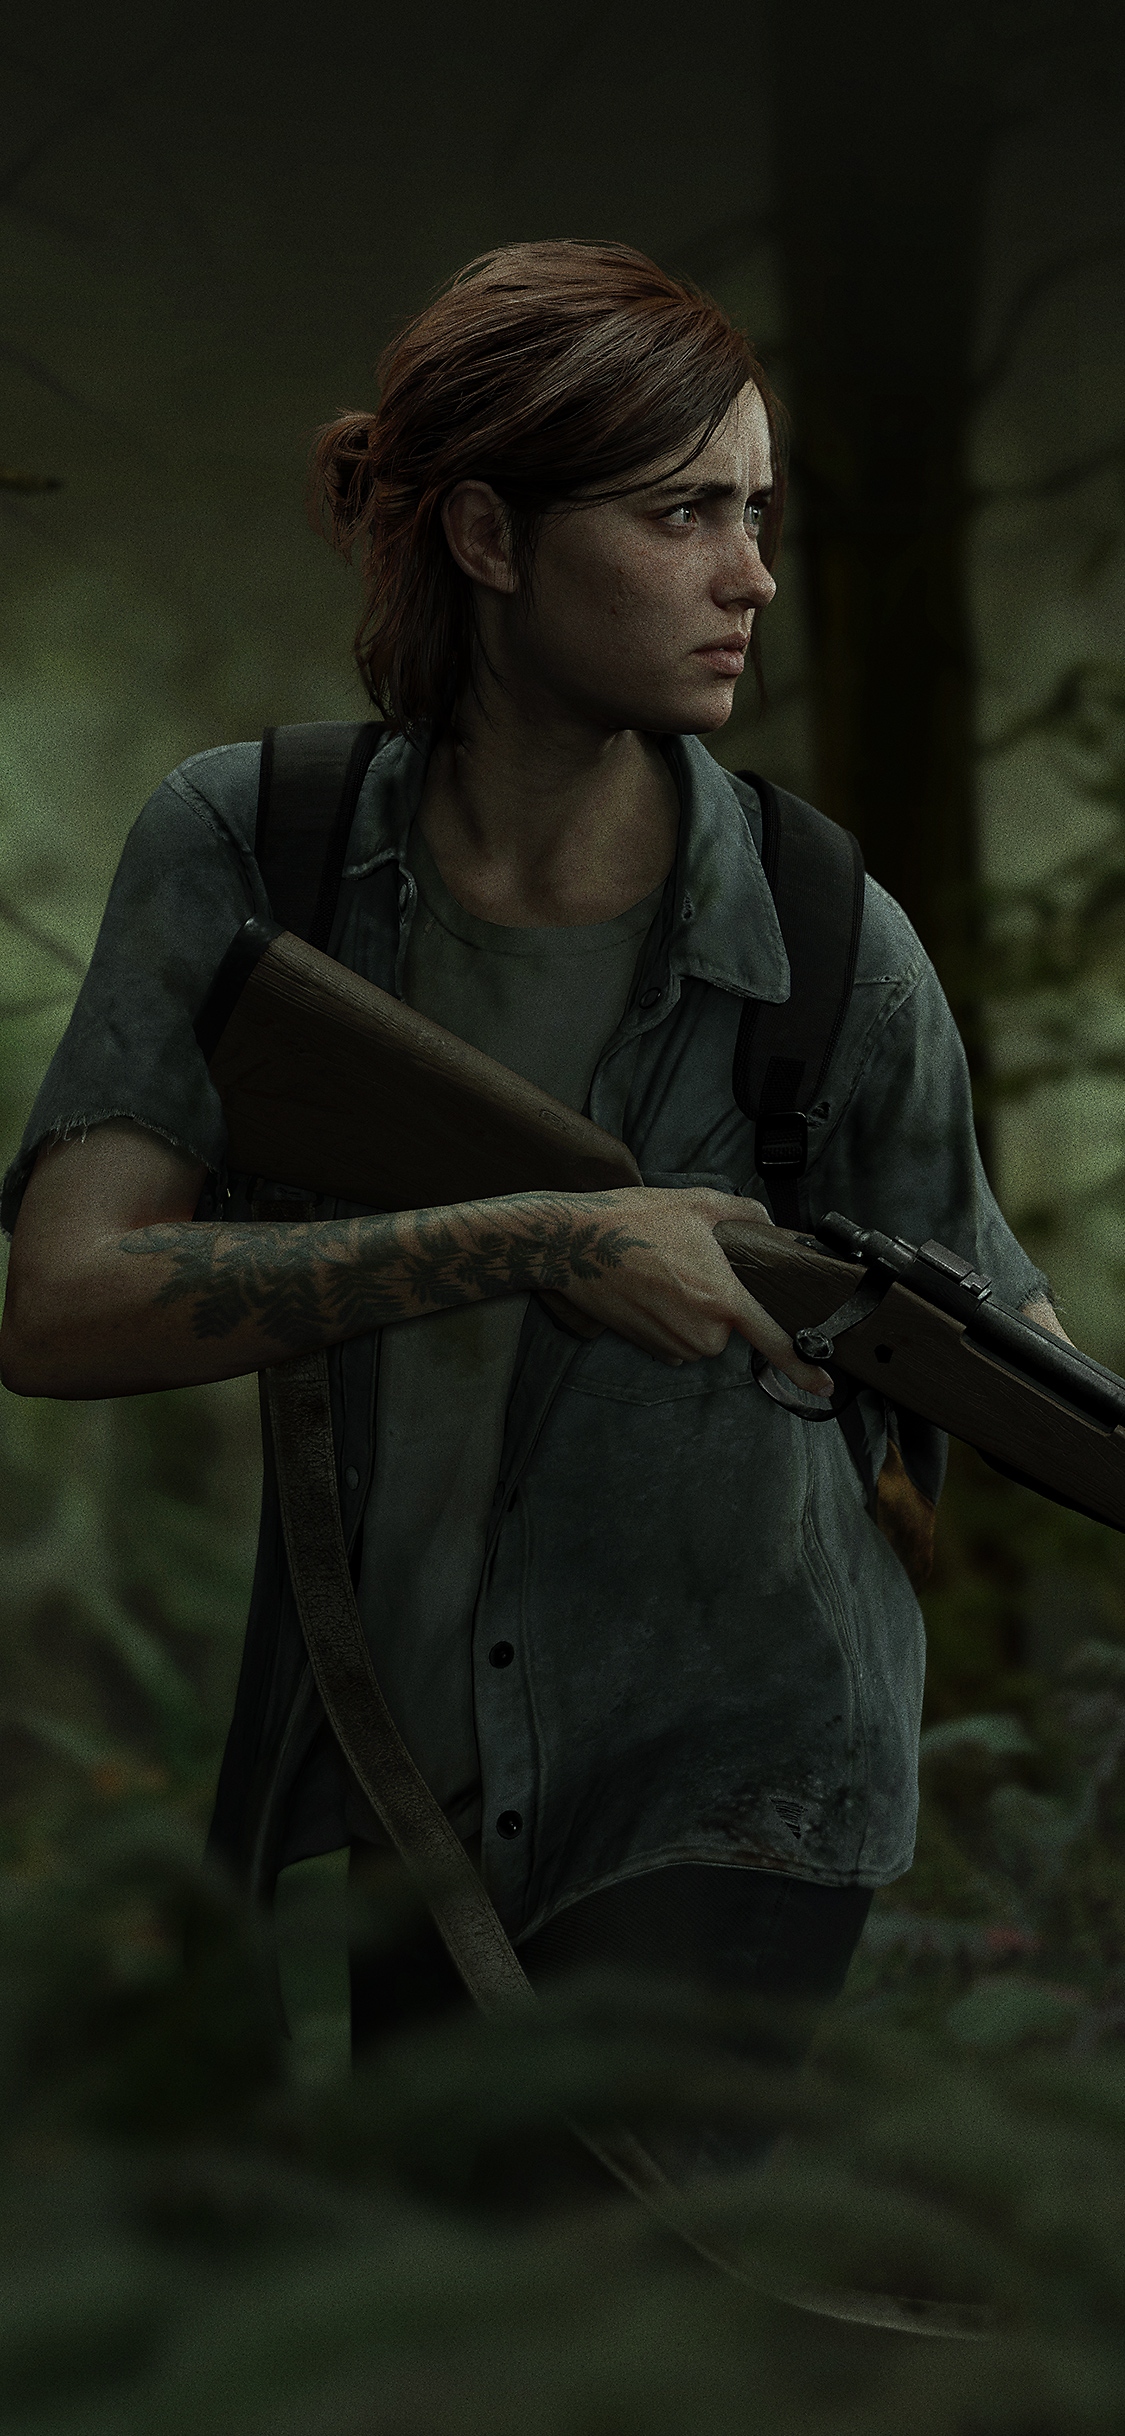 The Last of Us Part II - Dag van de uitbraak 2018 - iPhone X